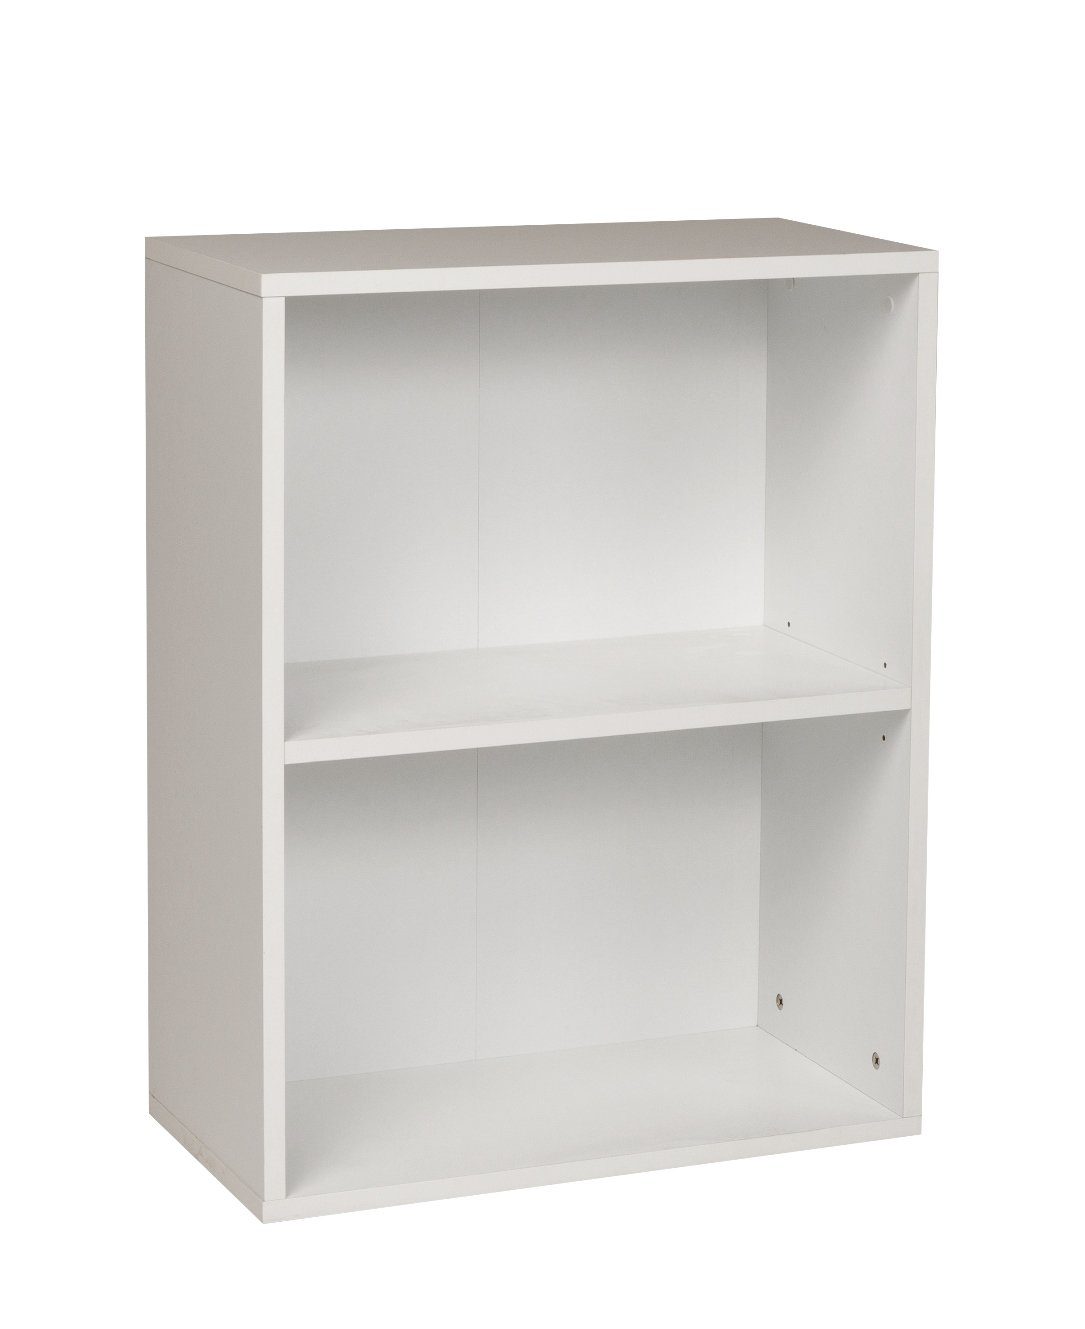 Furni24 Bücherregal Breites Bücherregal mit 2 Fächern, weiß, 60x31x77 cm